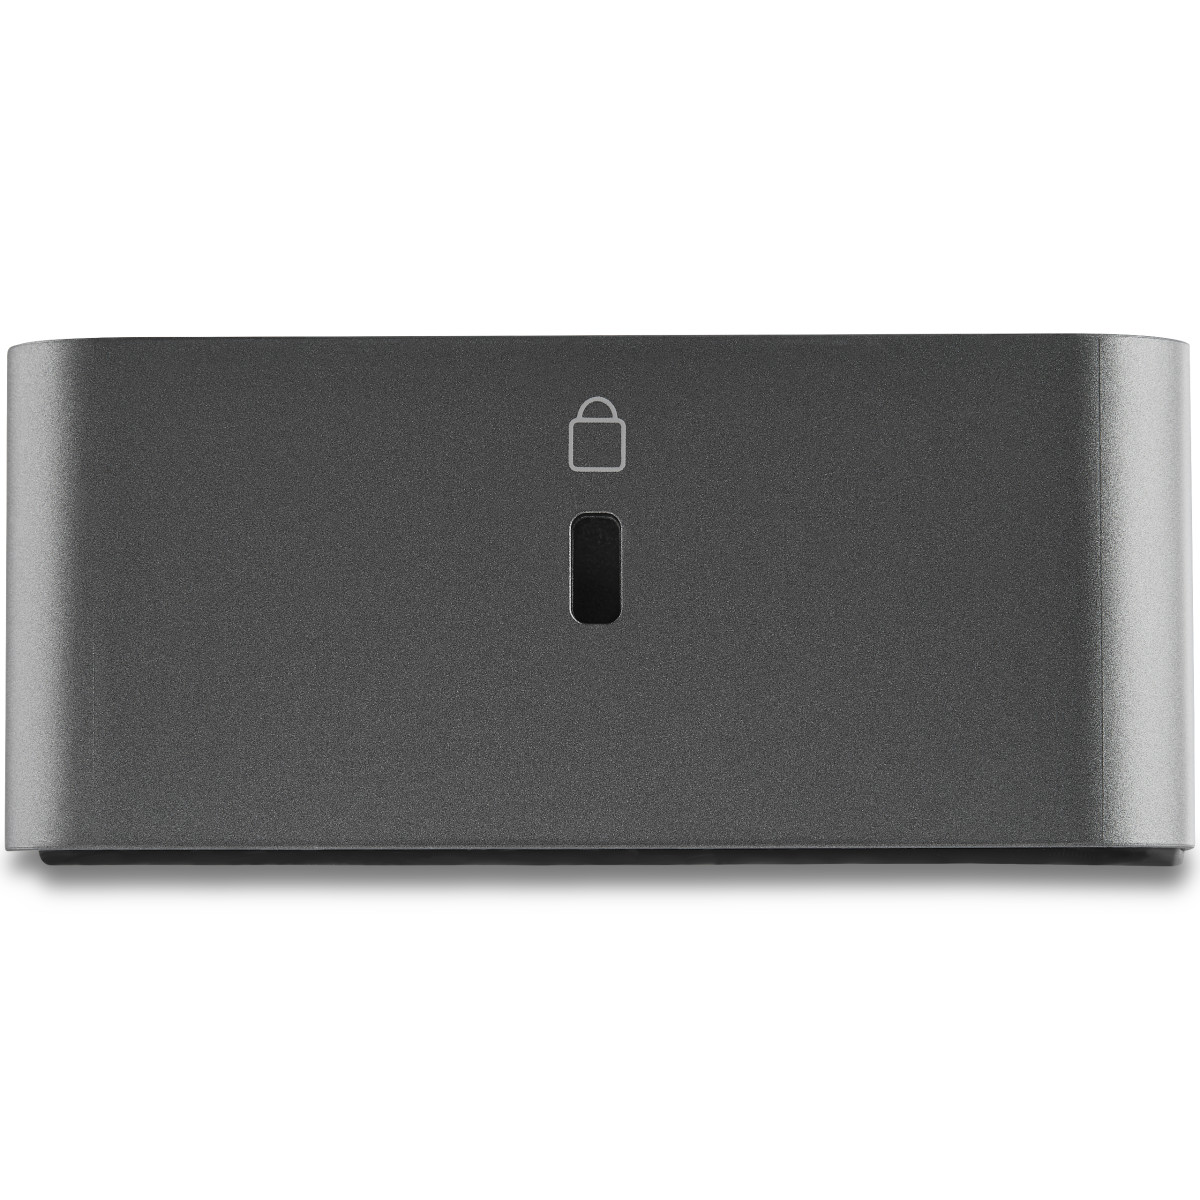 Dock USB-C & USB 3.0 - Dual 4K - 100W PD